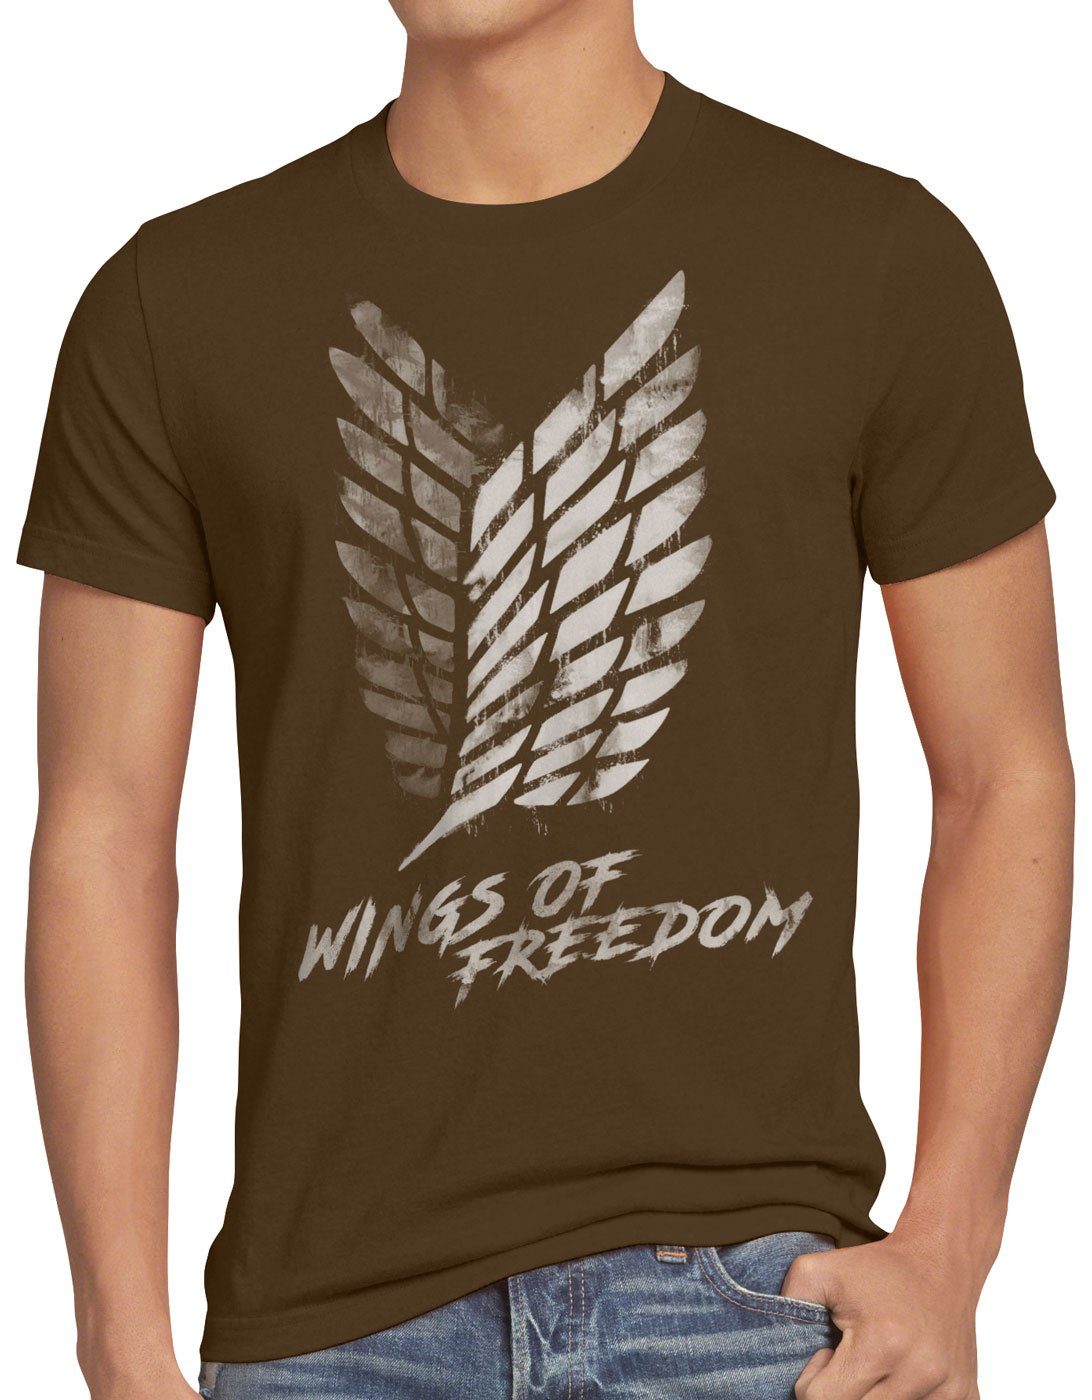 style3 Print-Shirt Herren T-Shirt Wings titan of attack braun on aot aufklärungstruppe Freedom